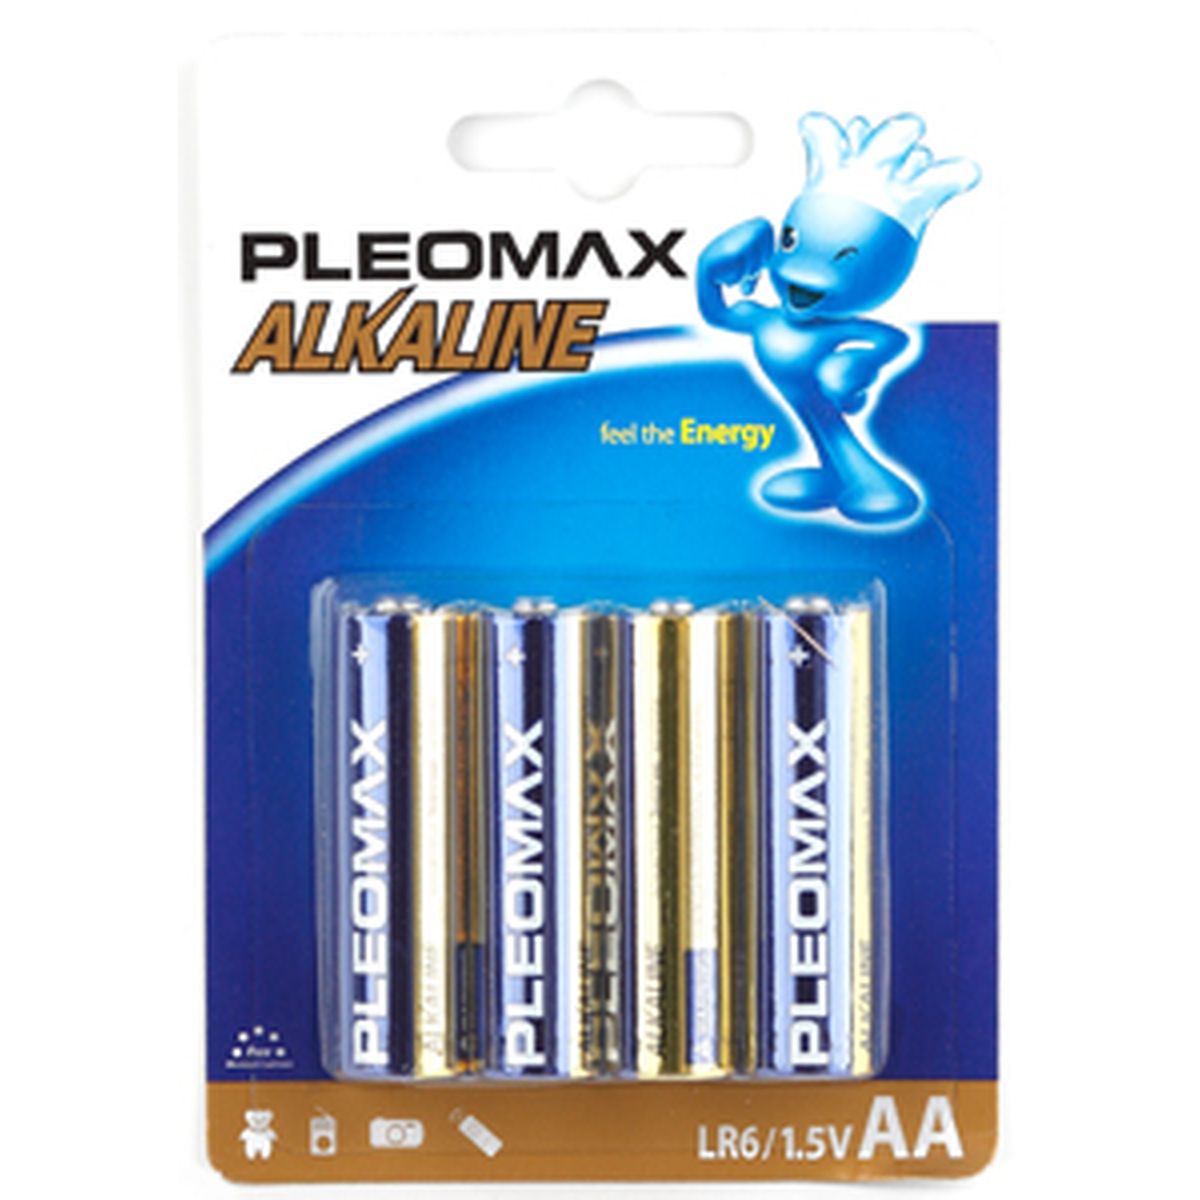 Элемент питания Pleomax LR14/343 BL2, комплект 4 батарейки (2 упак. х 2шт.)